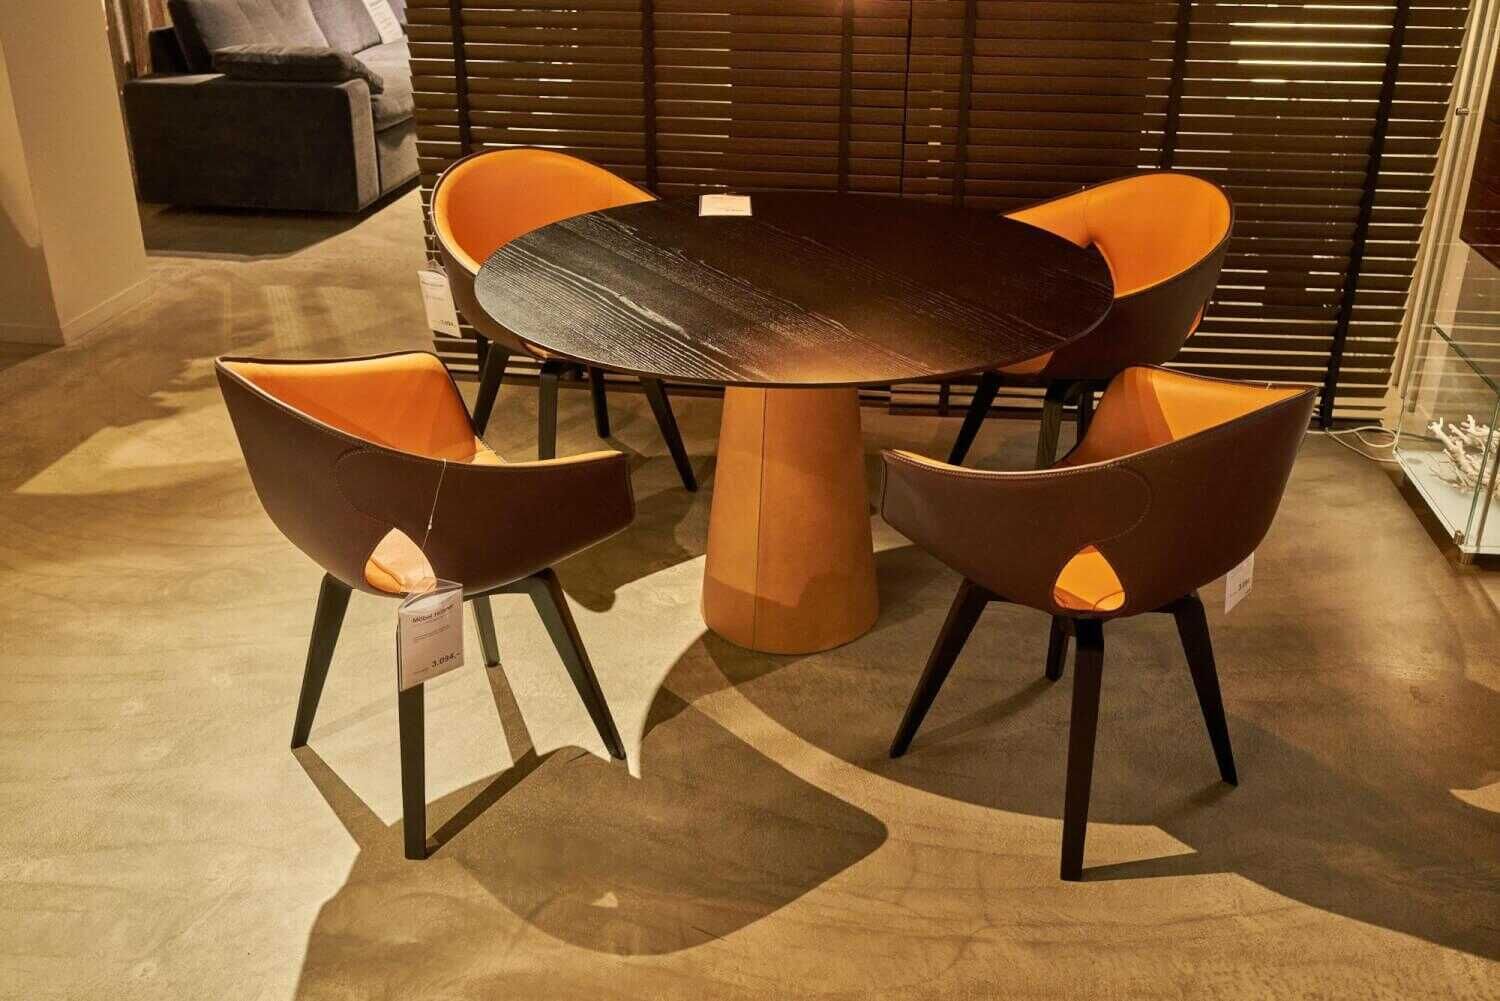 Tischgruppe Esstisch Mesa Due Esche Wengefarbig 4 Stühle Ginger Aussen Kernleder... von Poltrona Frau